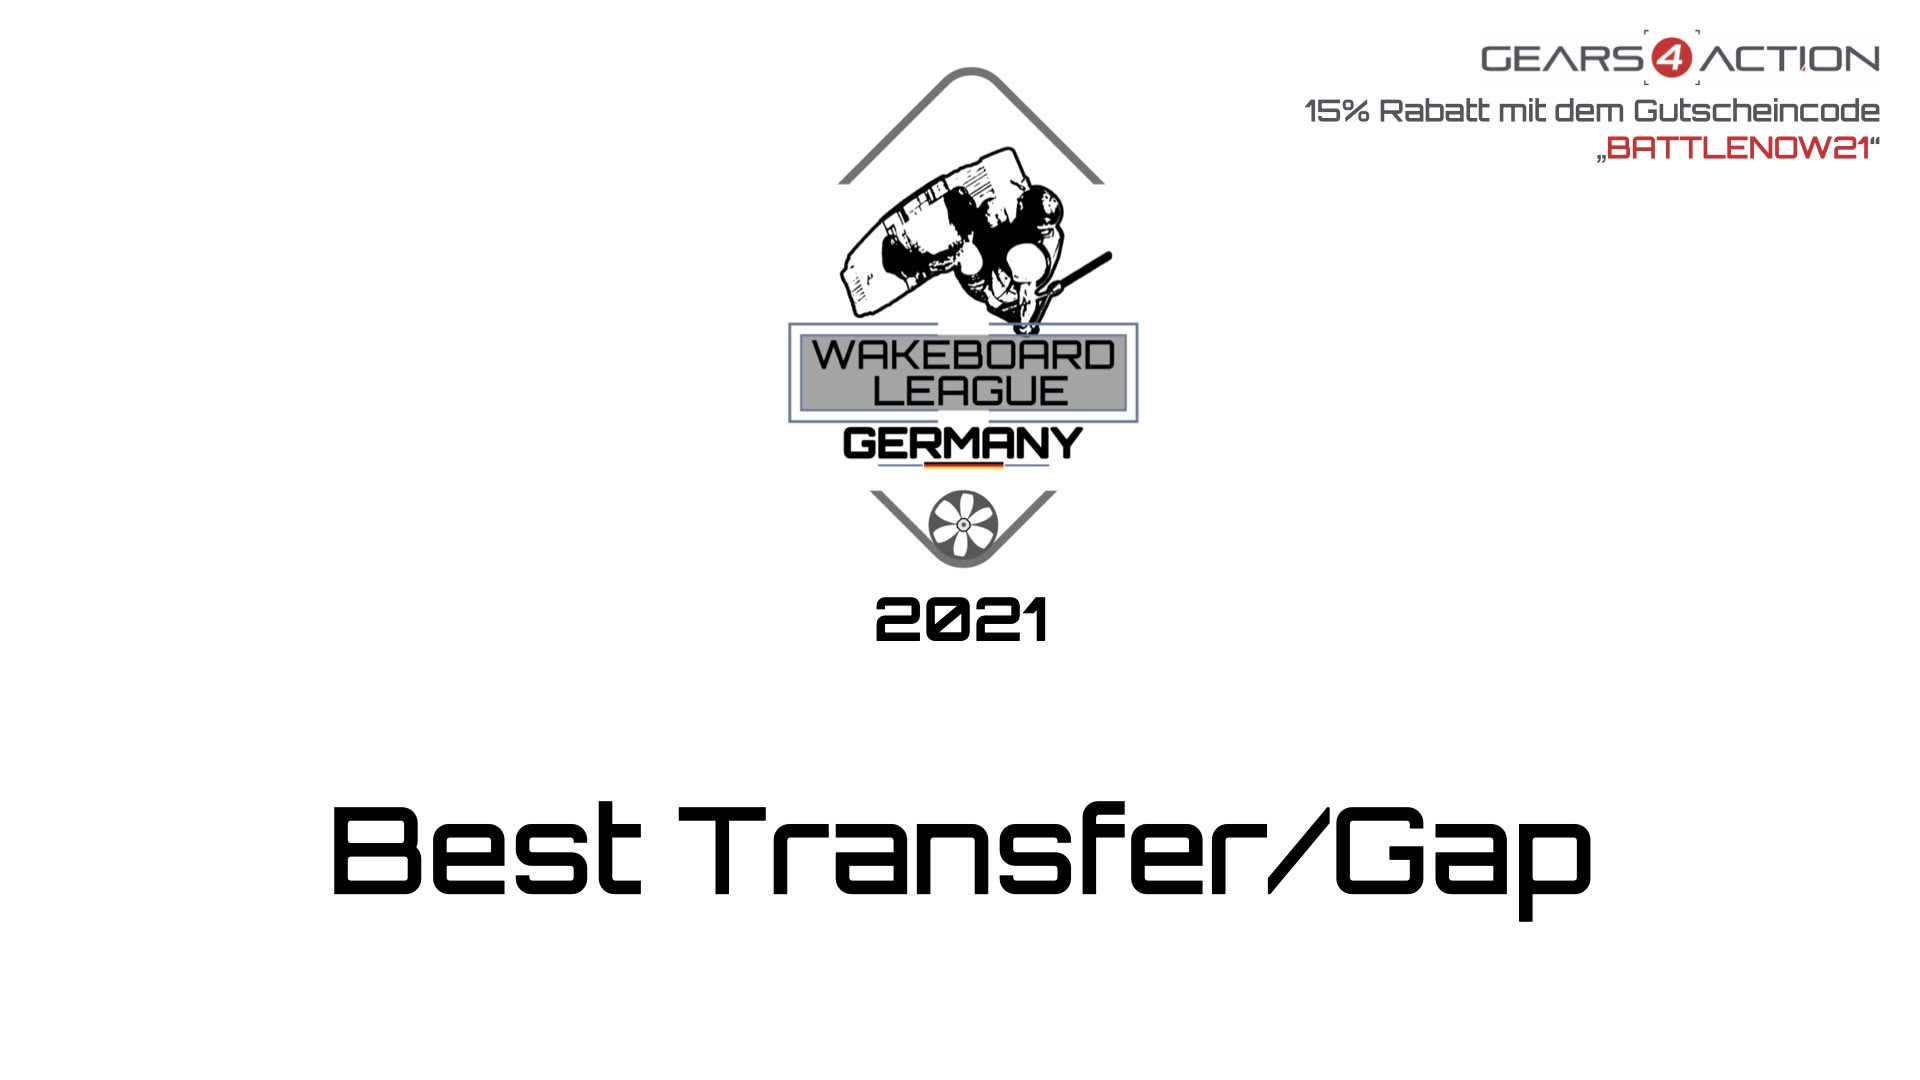 Wakeboard League Germany 2021 - #2 Best Transfer/Gap